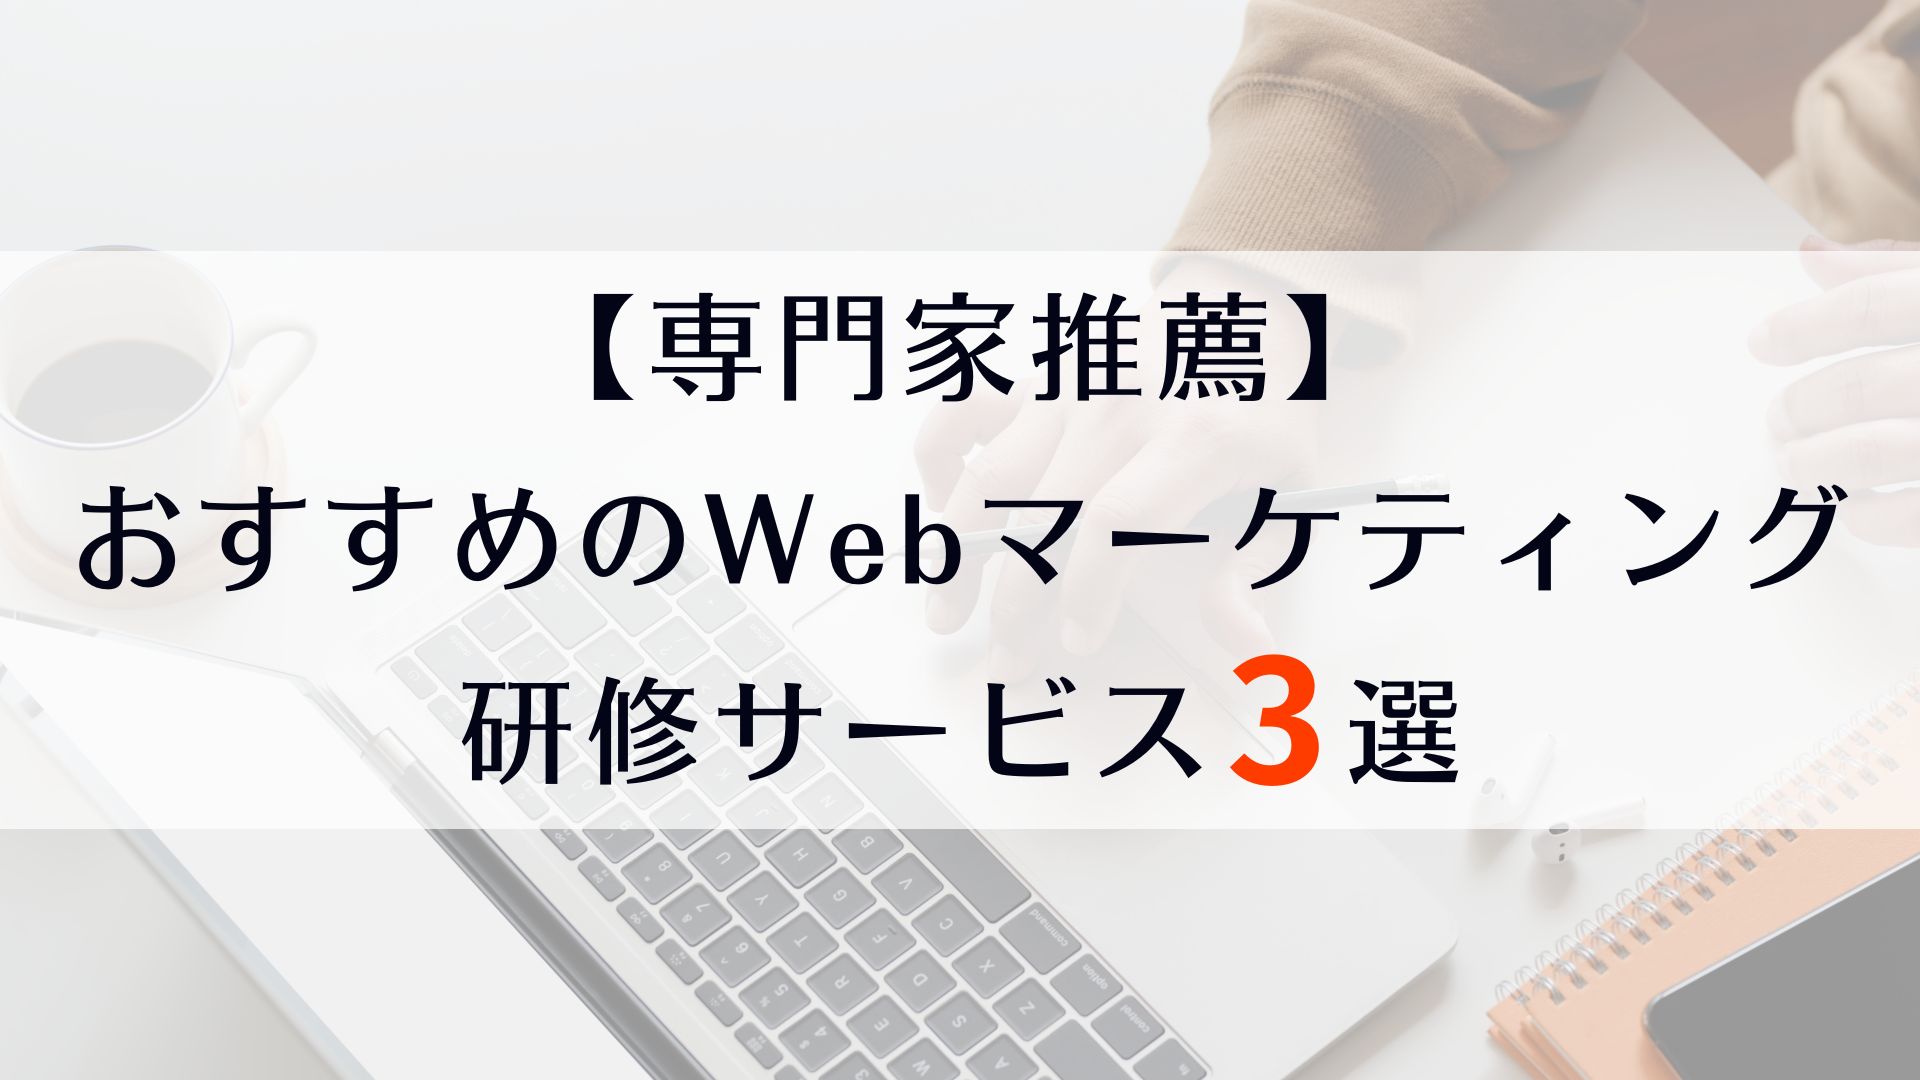 おすすめのWebマーケティング研修サービス3選